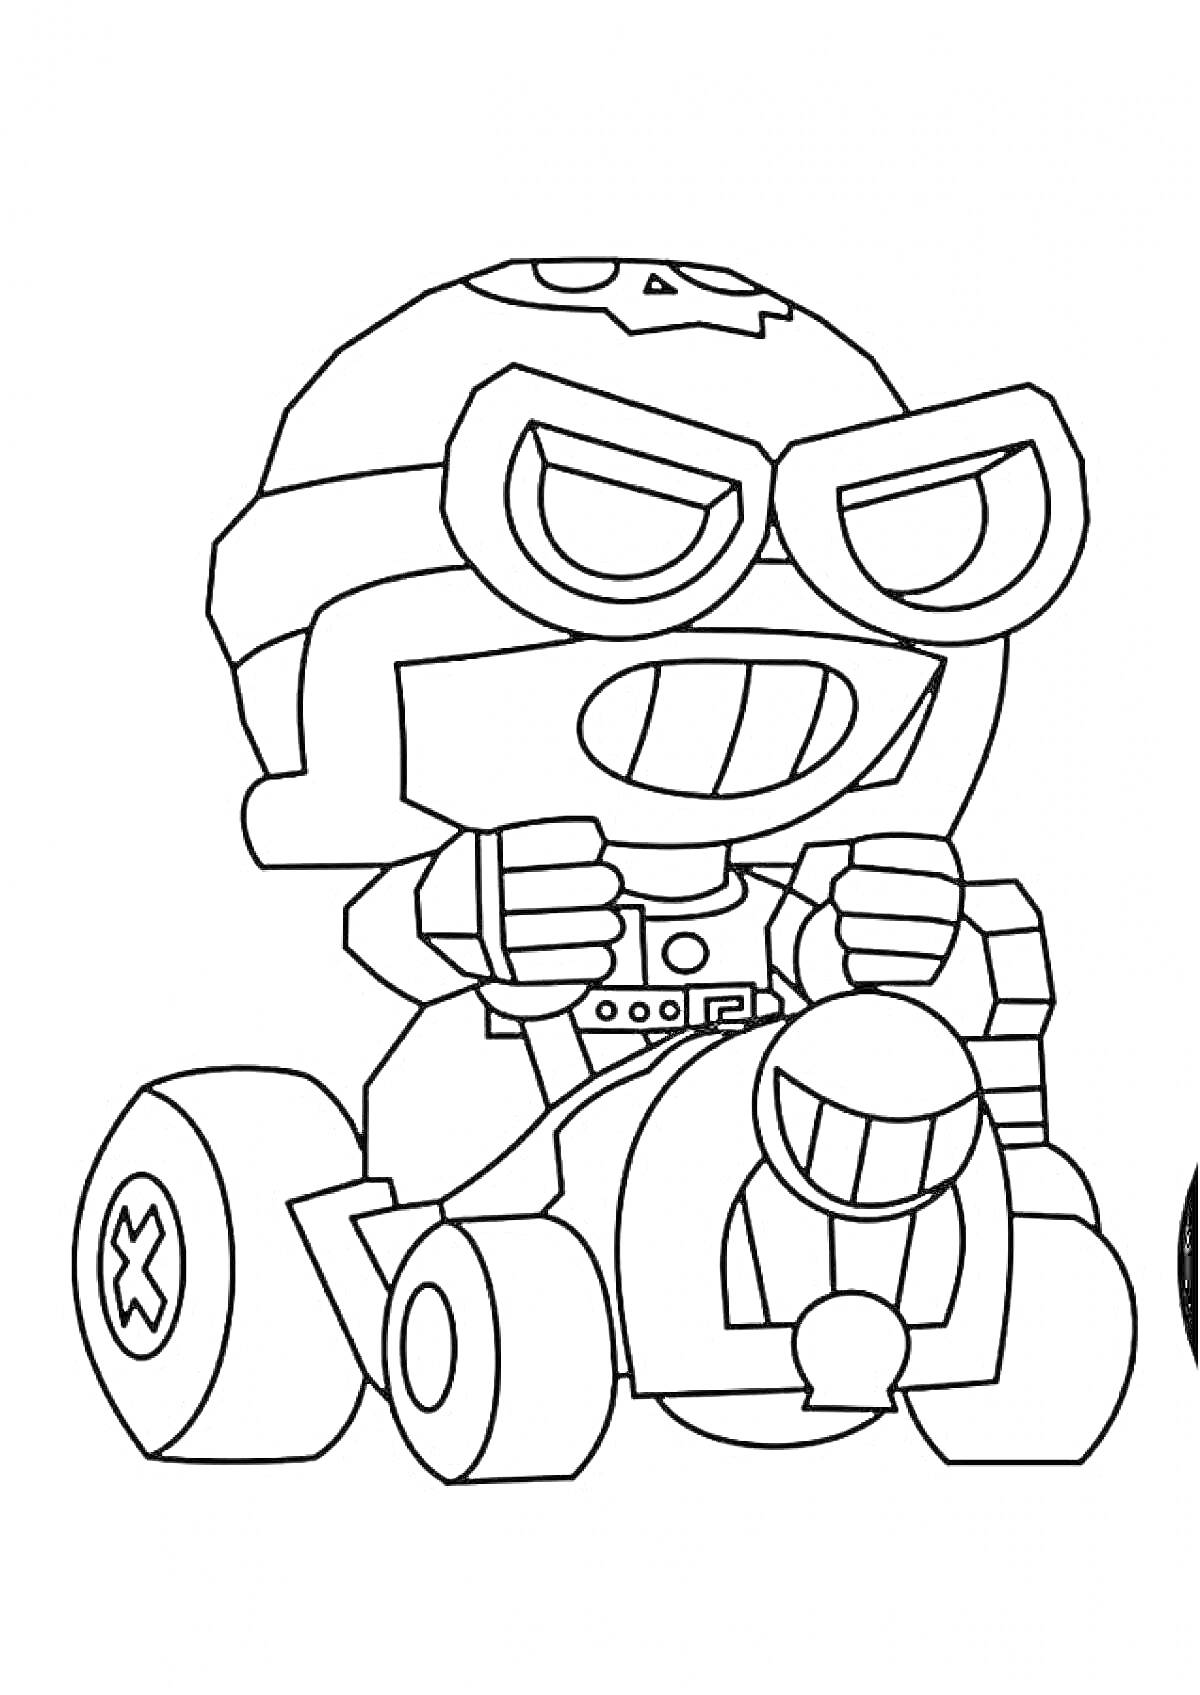 Раскраска Персонаж в шлеме и очках, сидящий в небольшом автомобиле, в стиле игры Браво Старс